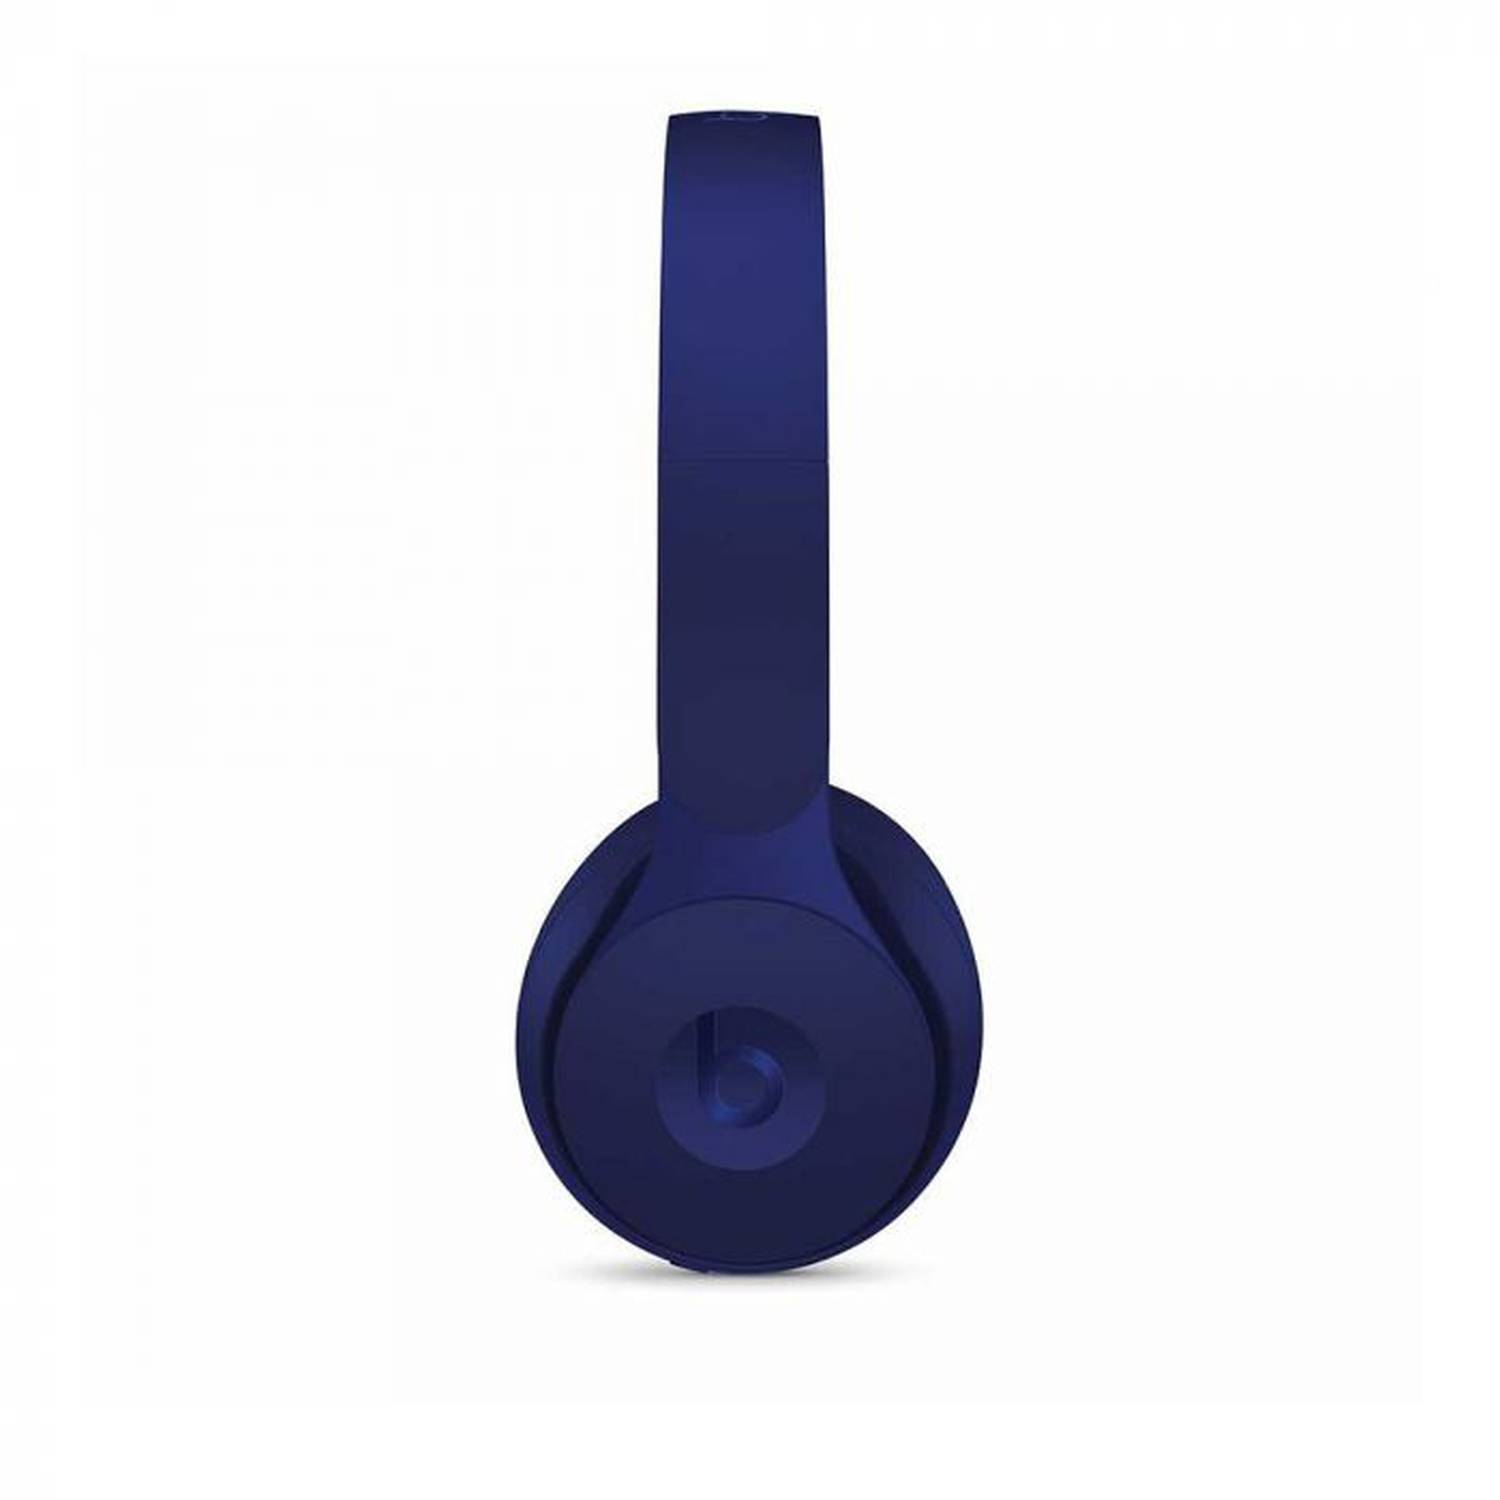 beats headphones dark blue